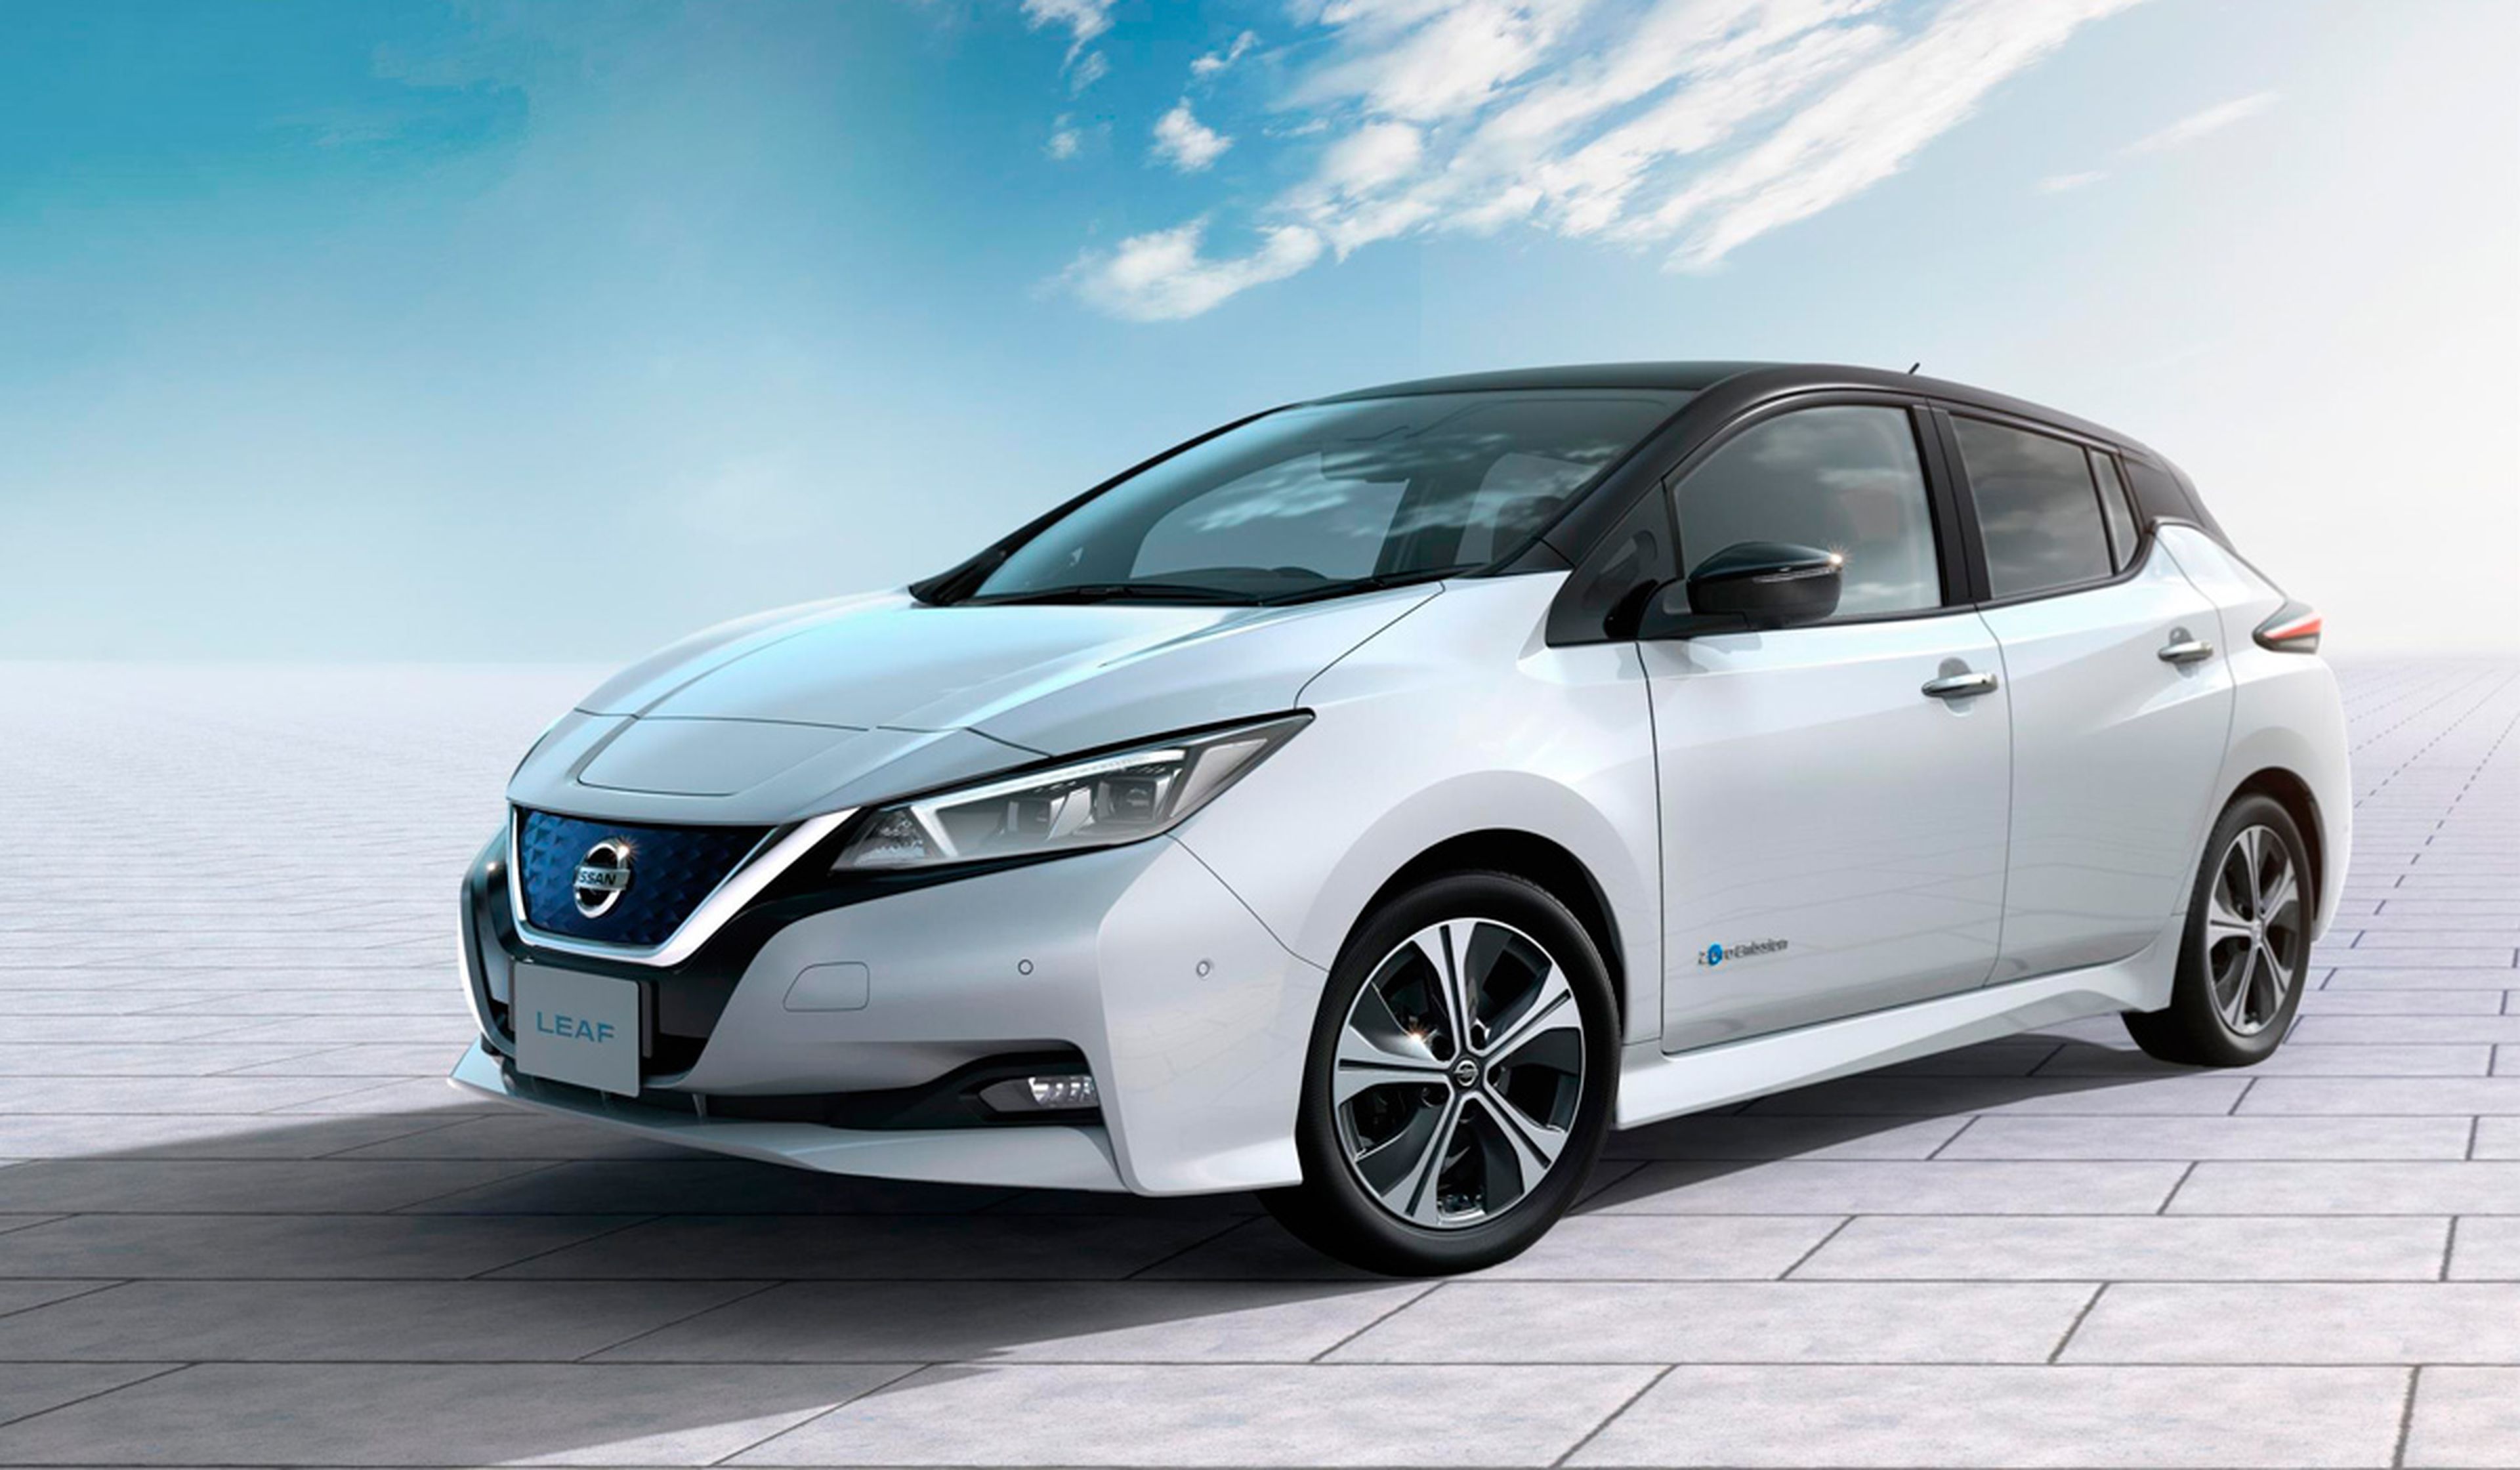 Nissan eliminará el diésel, pero no tan rápido como cabria esperar en el fabricante del eléctrico más vendido.